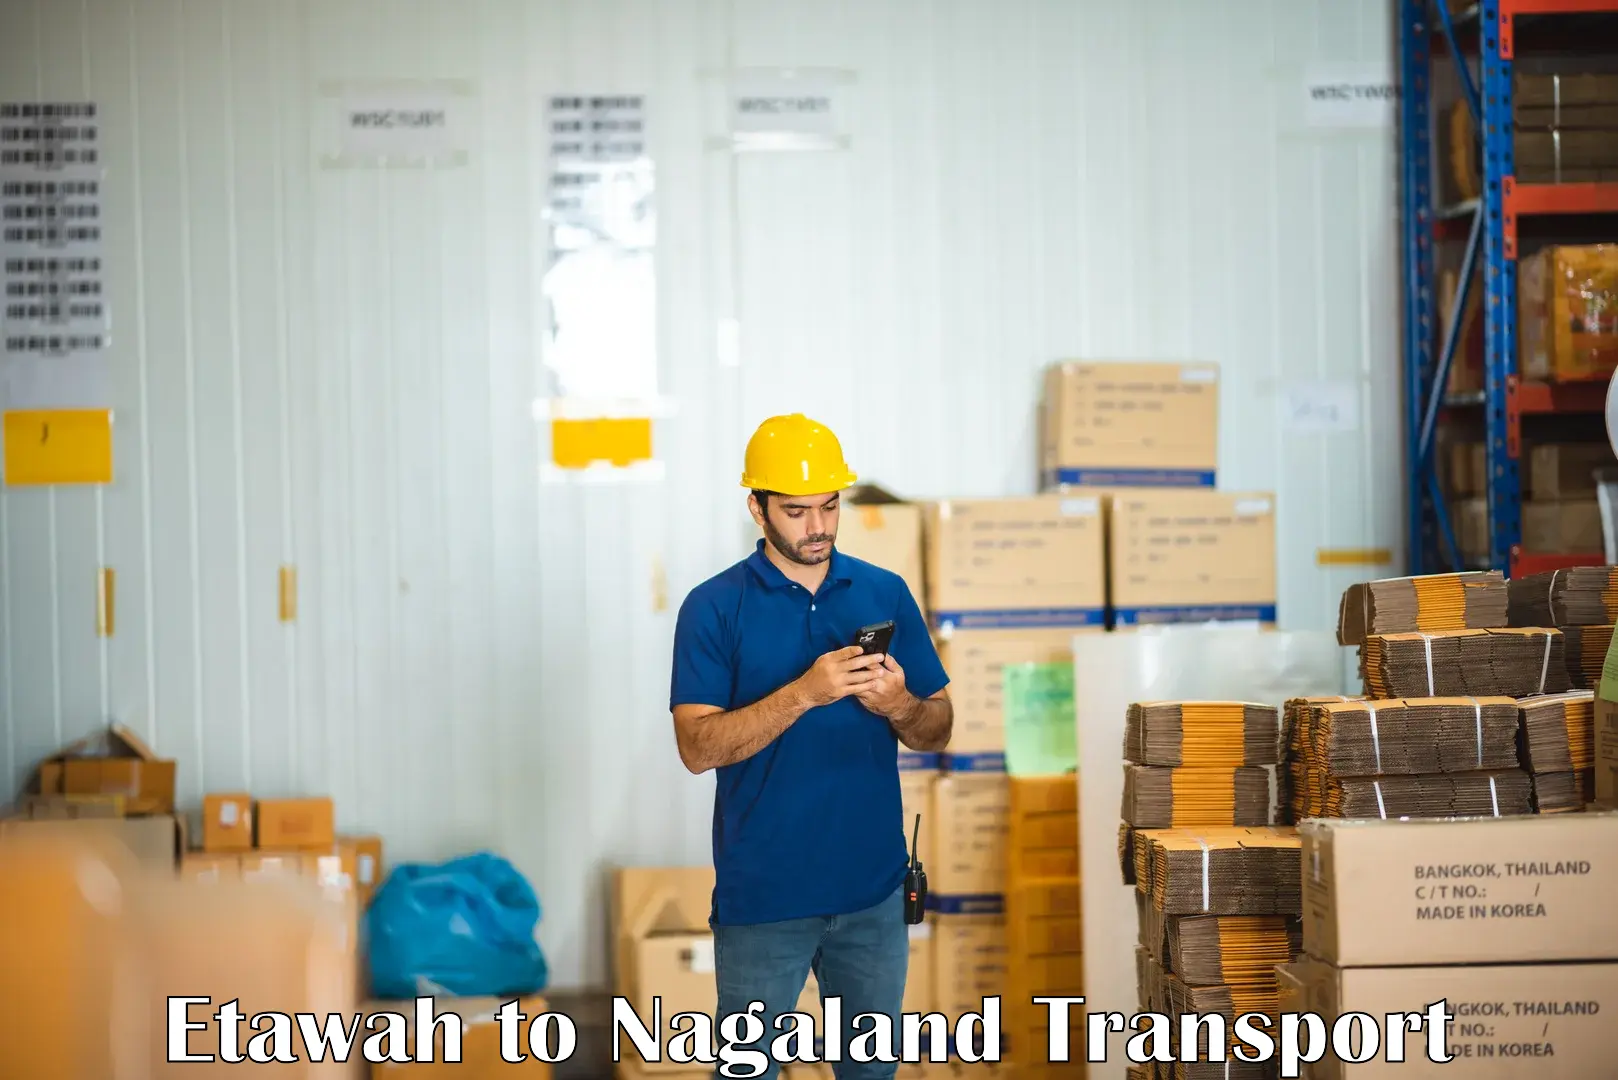 Container transport service Etawah to Nagaland